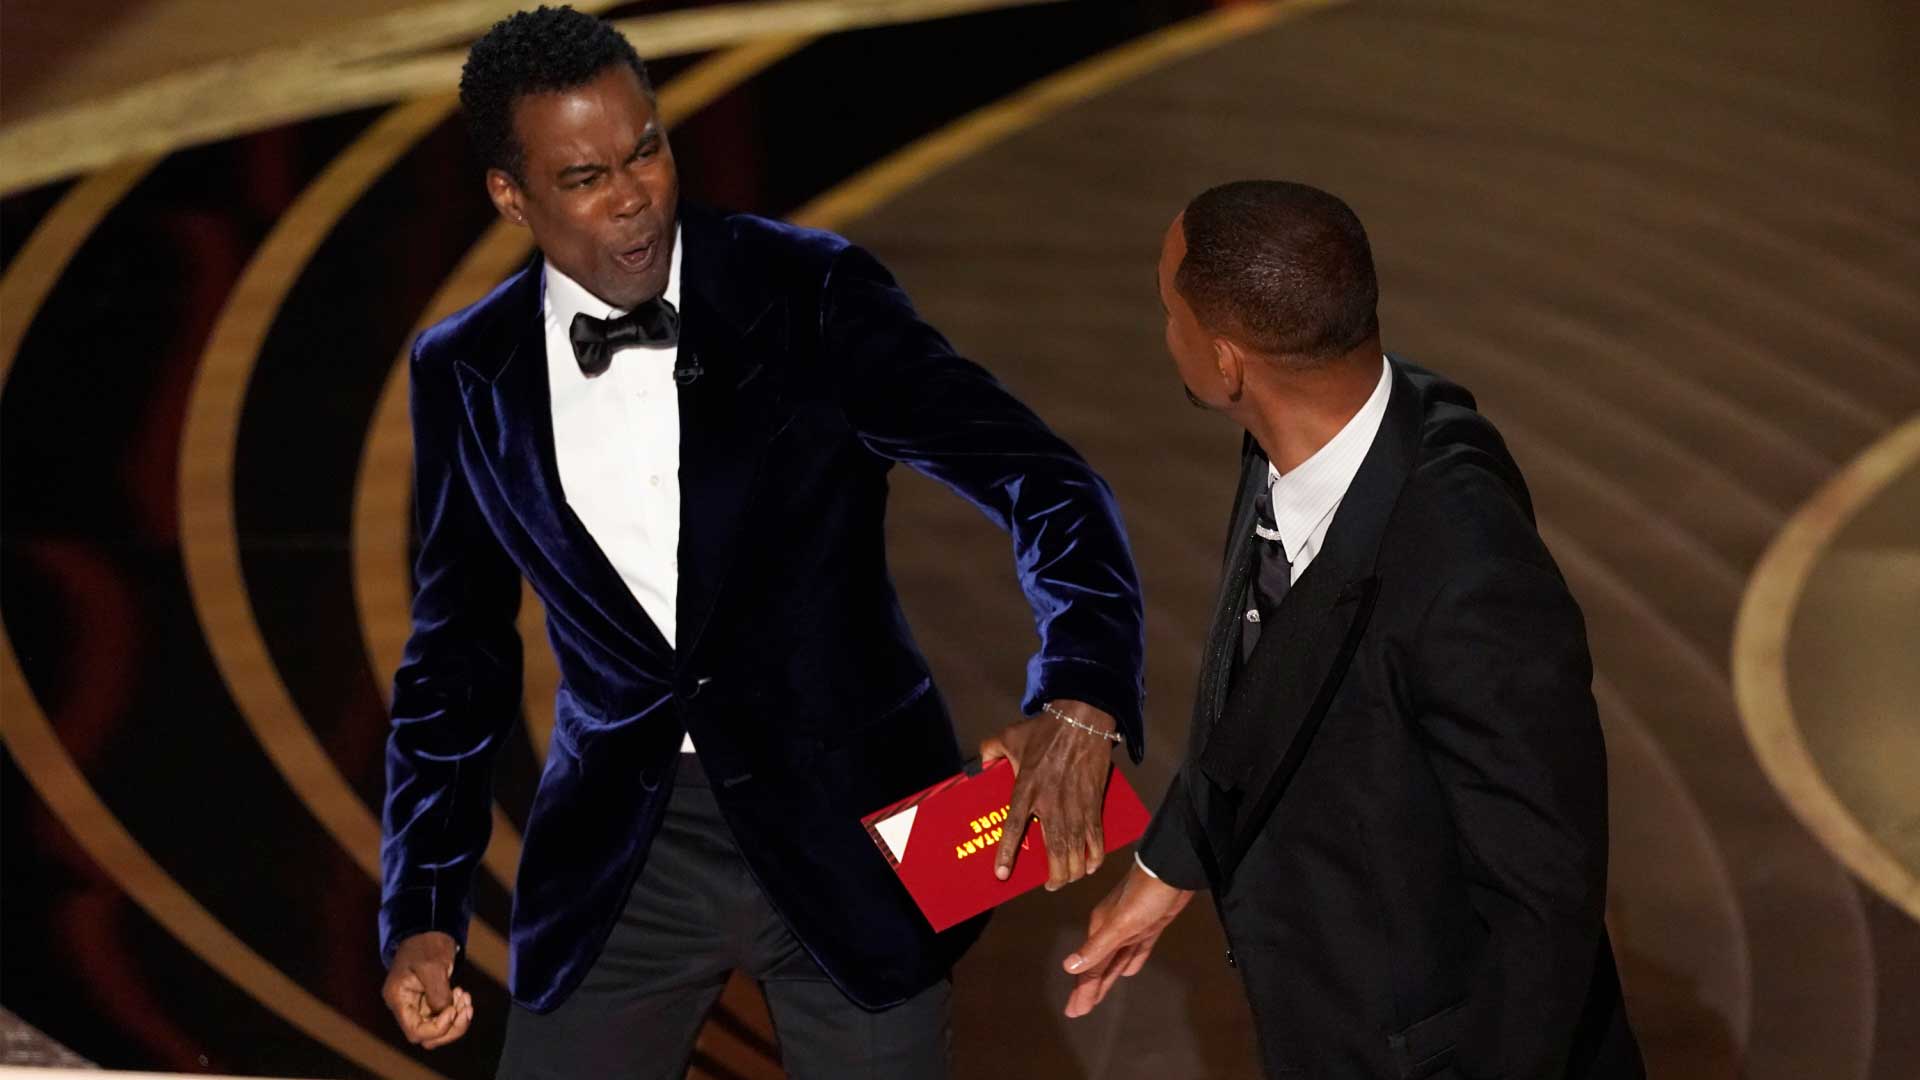 Premios Oscar: Will Smith golpea a Chris Rock defendiendo a su mujer